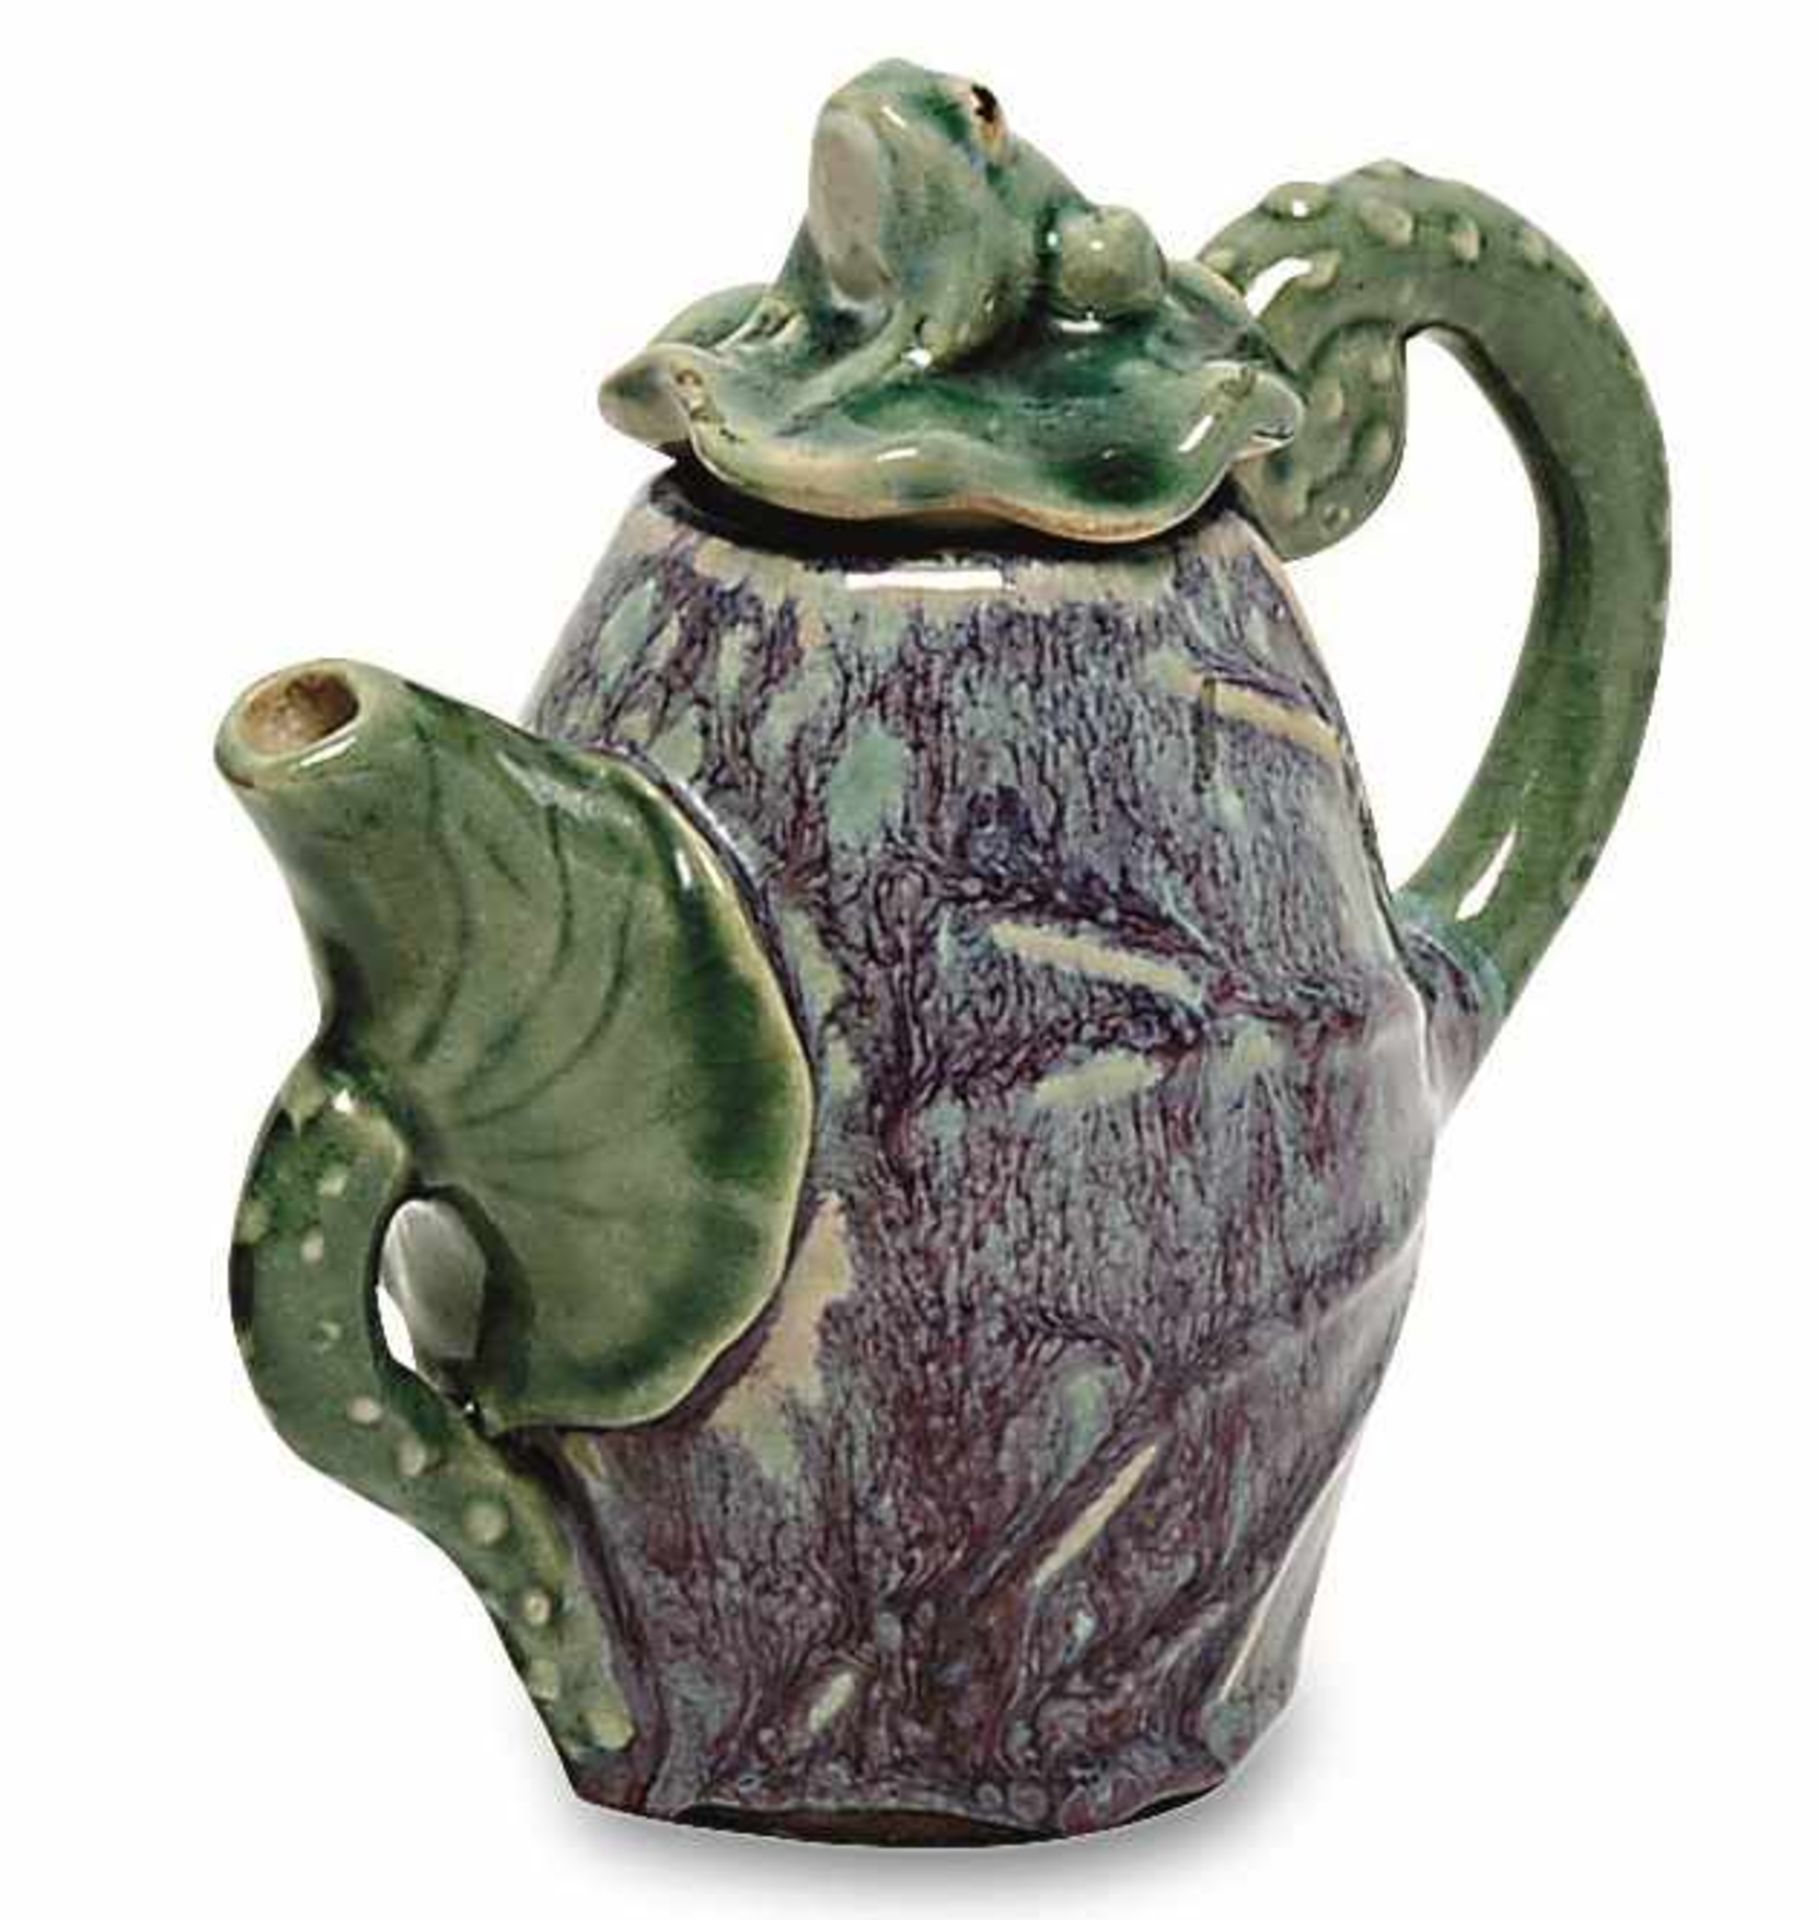 Kännchen Frankreich, Anfang 20. Jh. (?) Keramik in vegetabiler Form, mit Blattaderung und Ausguss in